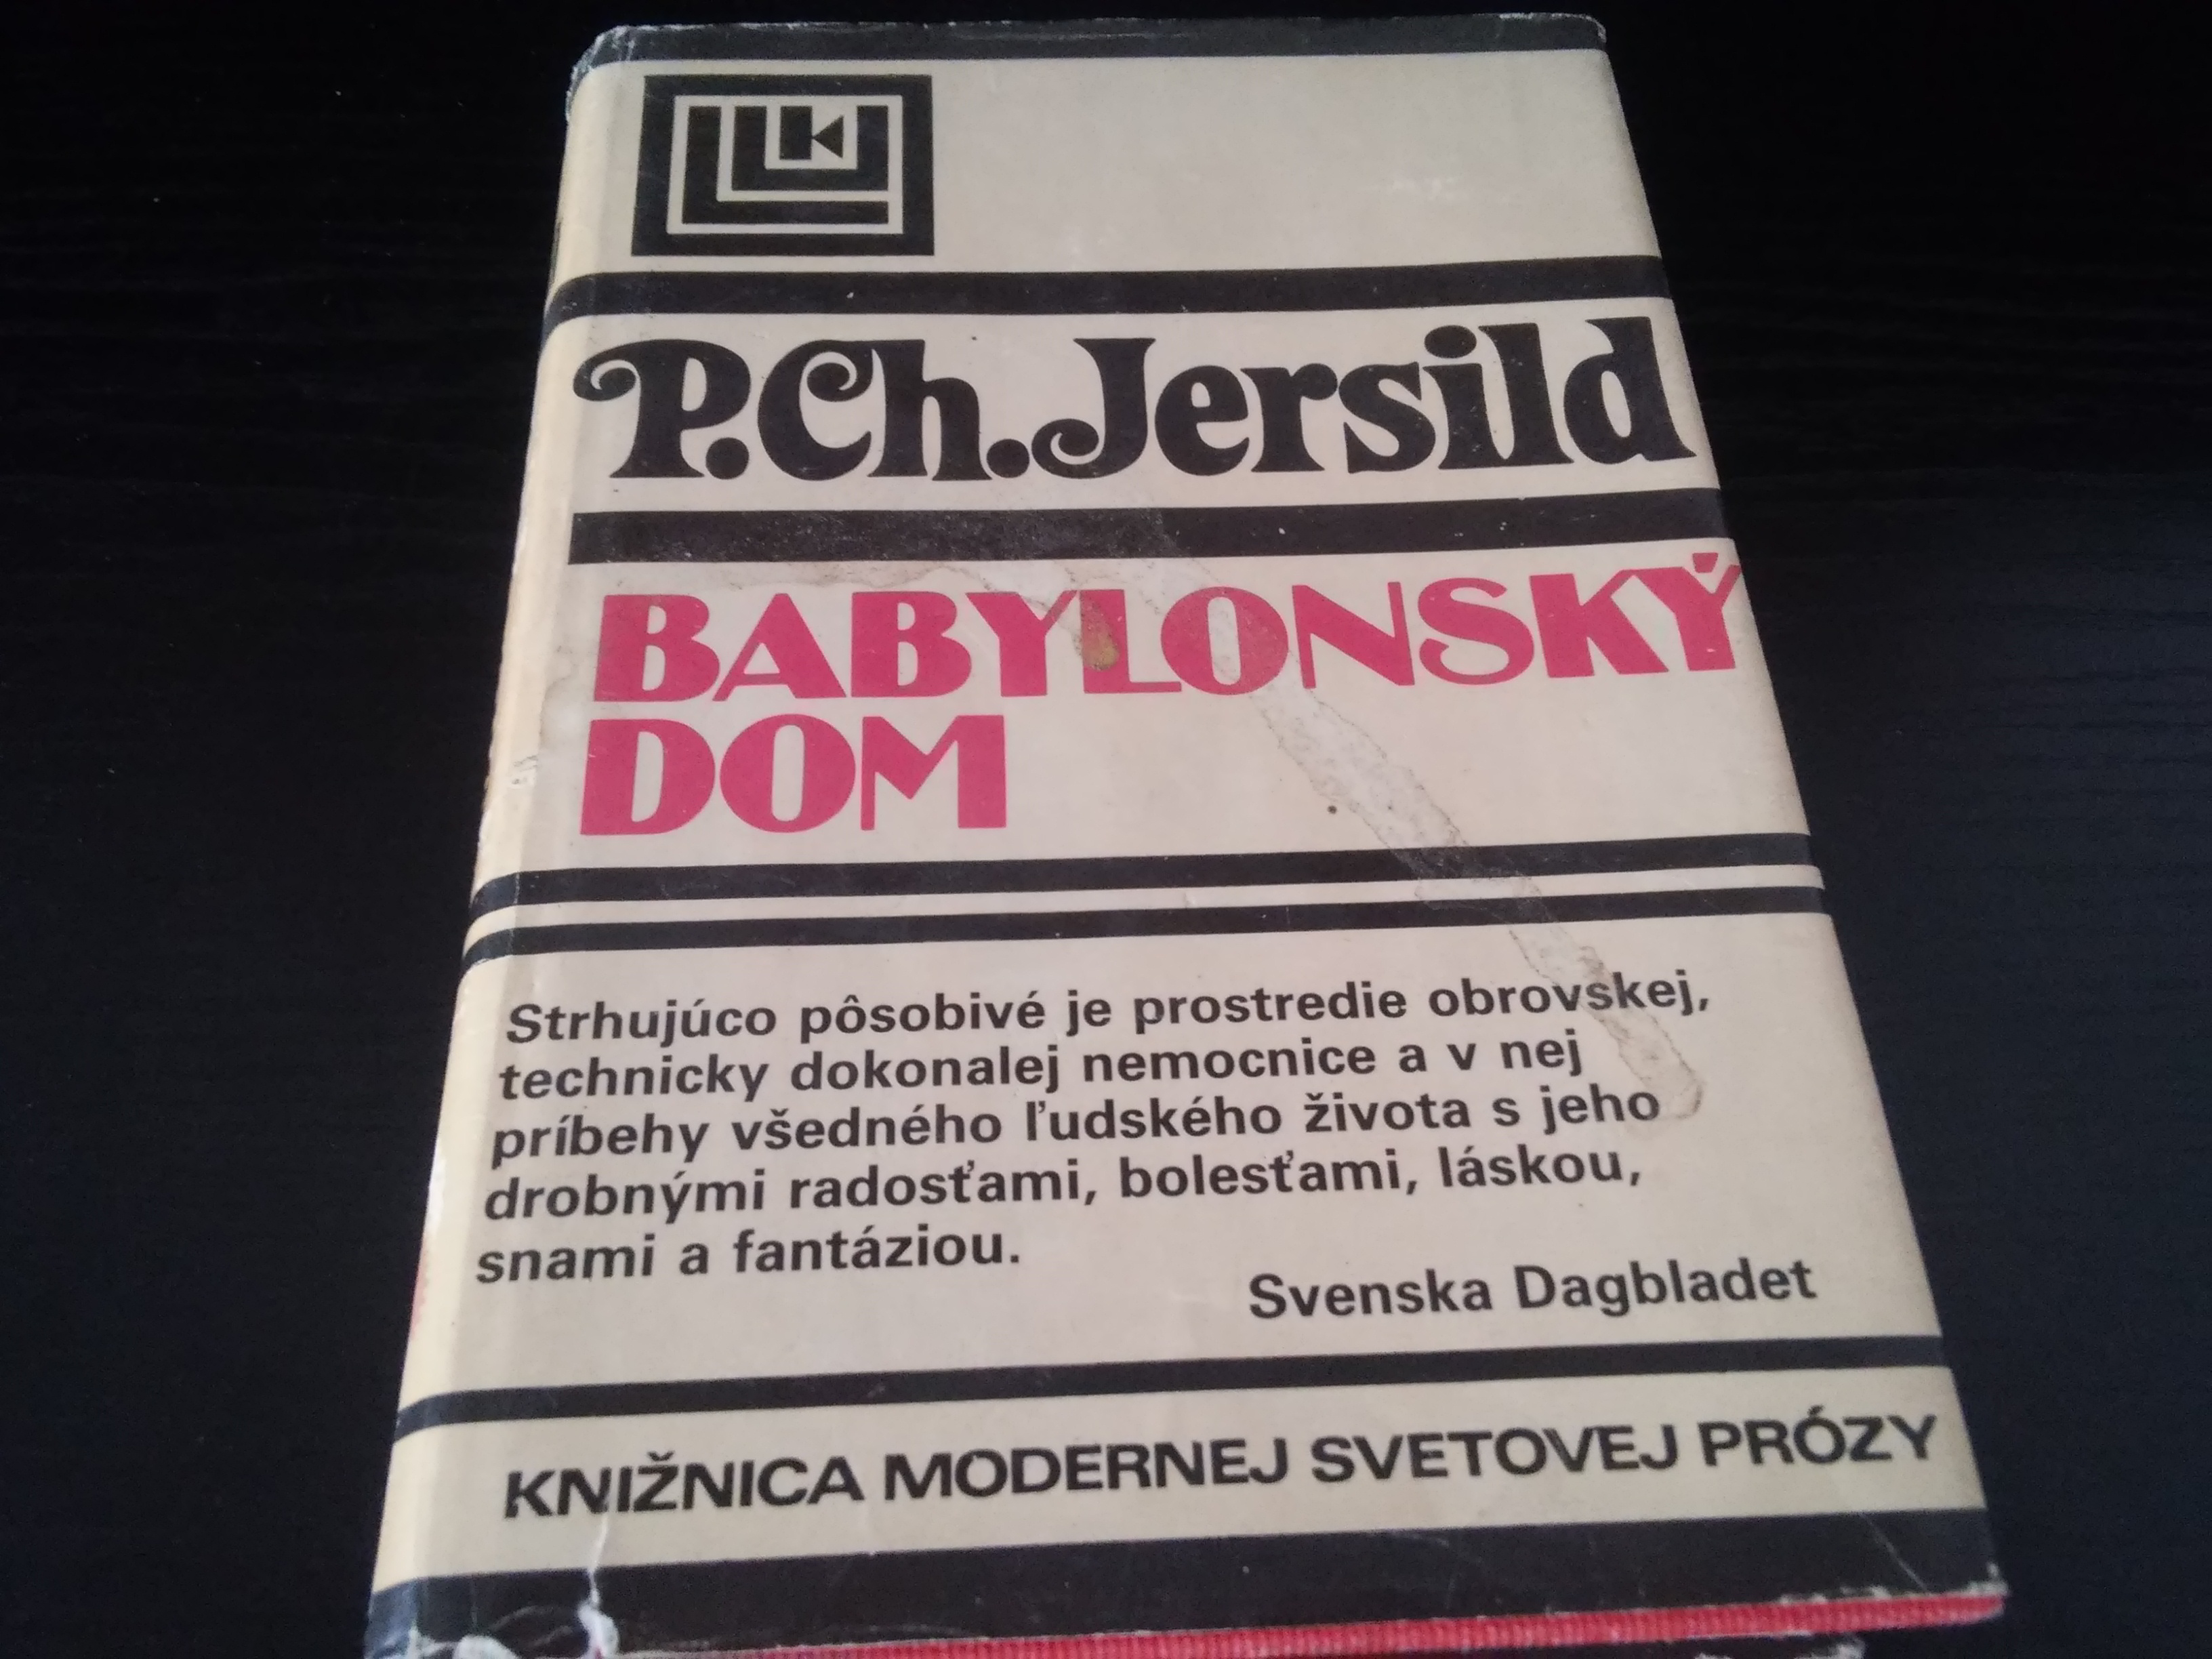 p . ch . jersild - babylonsky dom - roman slovensky - Knihy